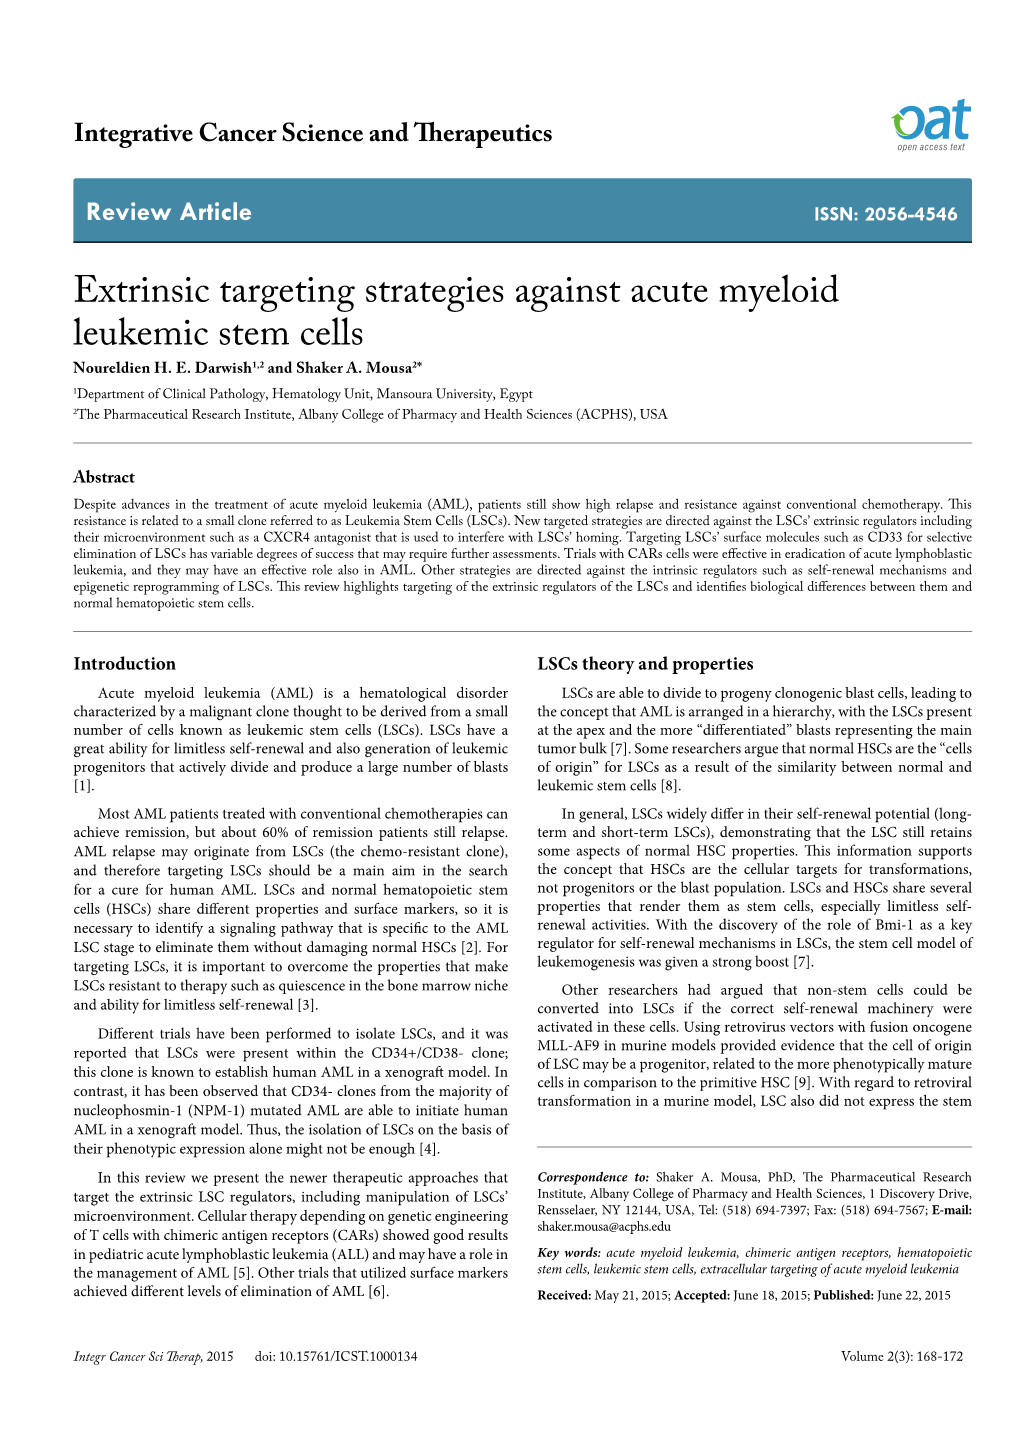 Extrinsic Targeting Strategies Against Acute Myeloid Leukemic Stem Cells Noureldien H